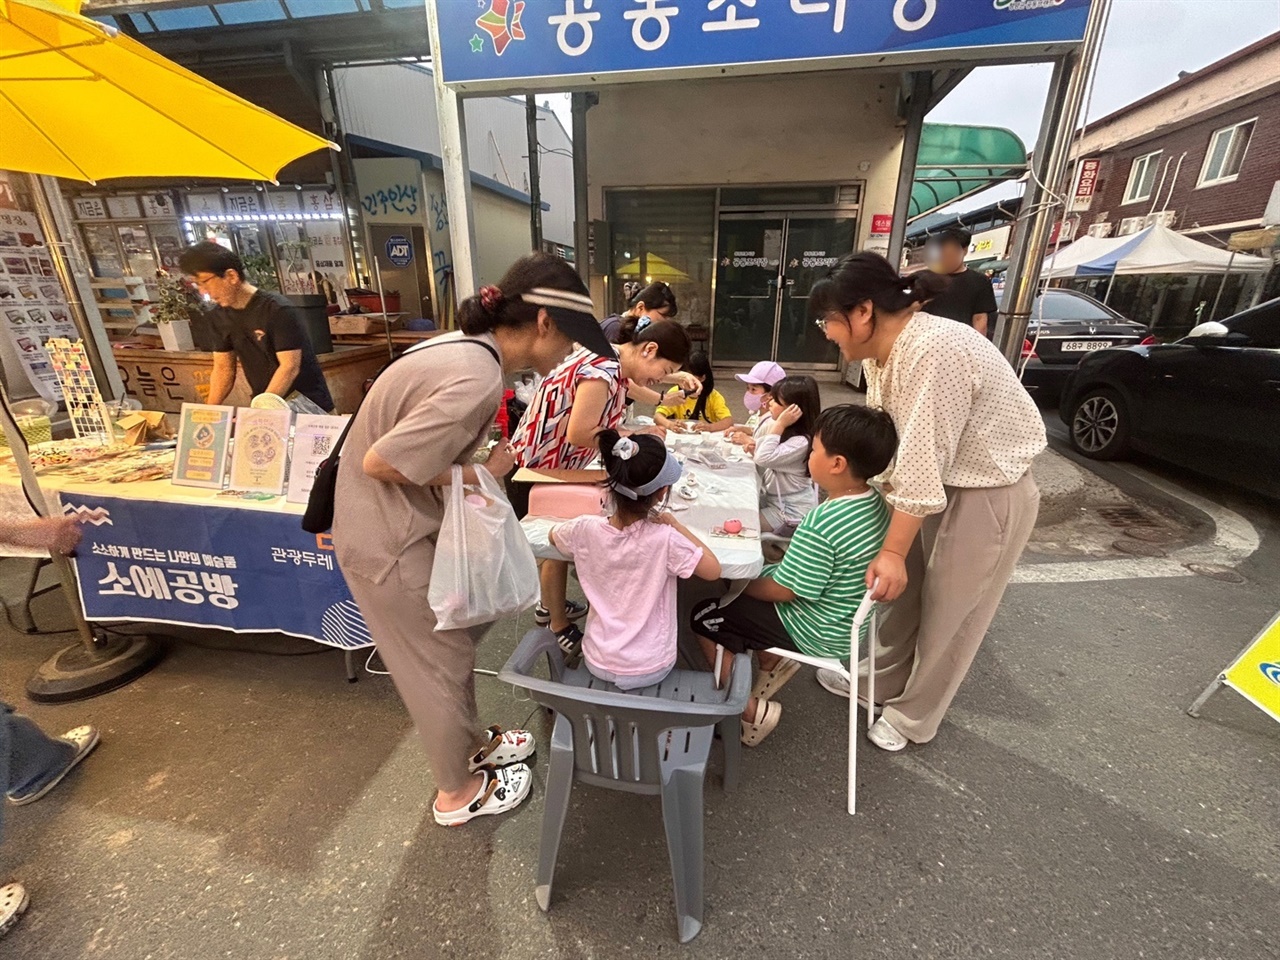 대부분 청년이 참여하고 있는 달빛 마켓은 공예 체험과 수제품, 먹거리 등을 판매하면서, 주민참여형 행사로 자리 잡고 있다.